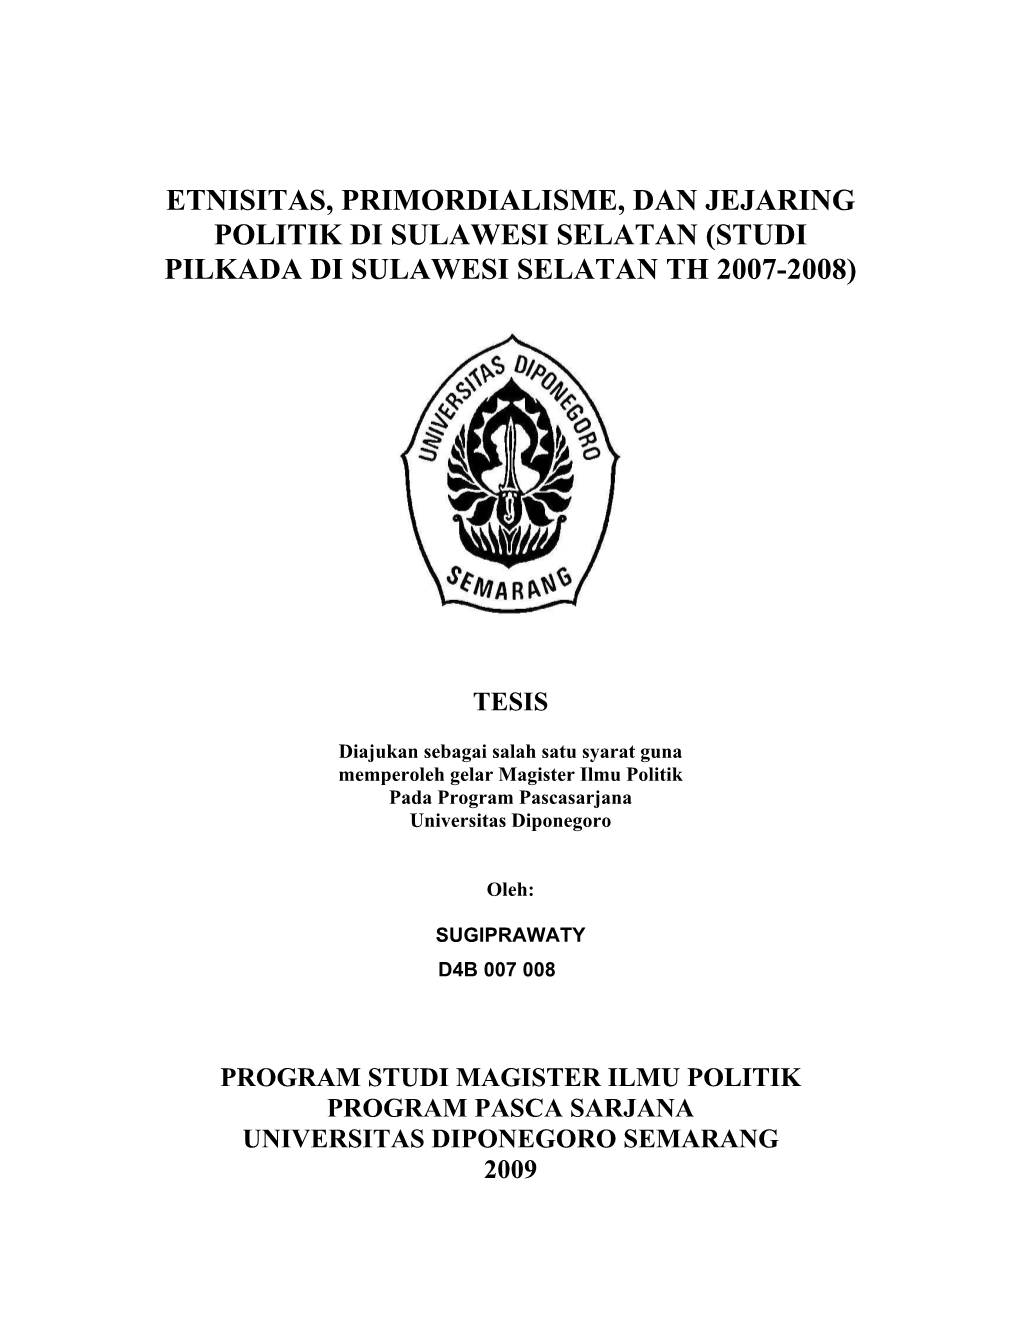 Etnisitas, Primordialisme, Dan Jejaring Politik Di Sulawesi Selatan (Studi Pilkada Di Sulawesi Selatan Th 2007-2008)